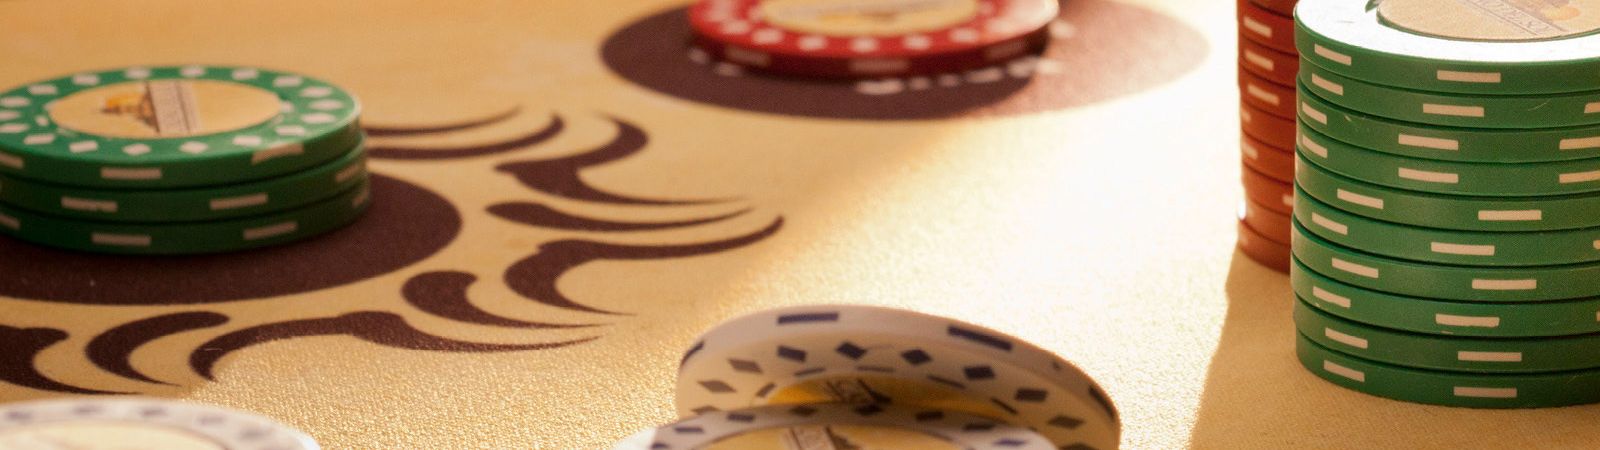 Poker at Casino De Sol 